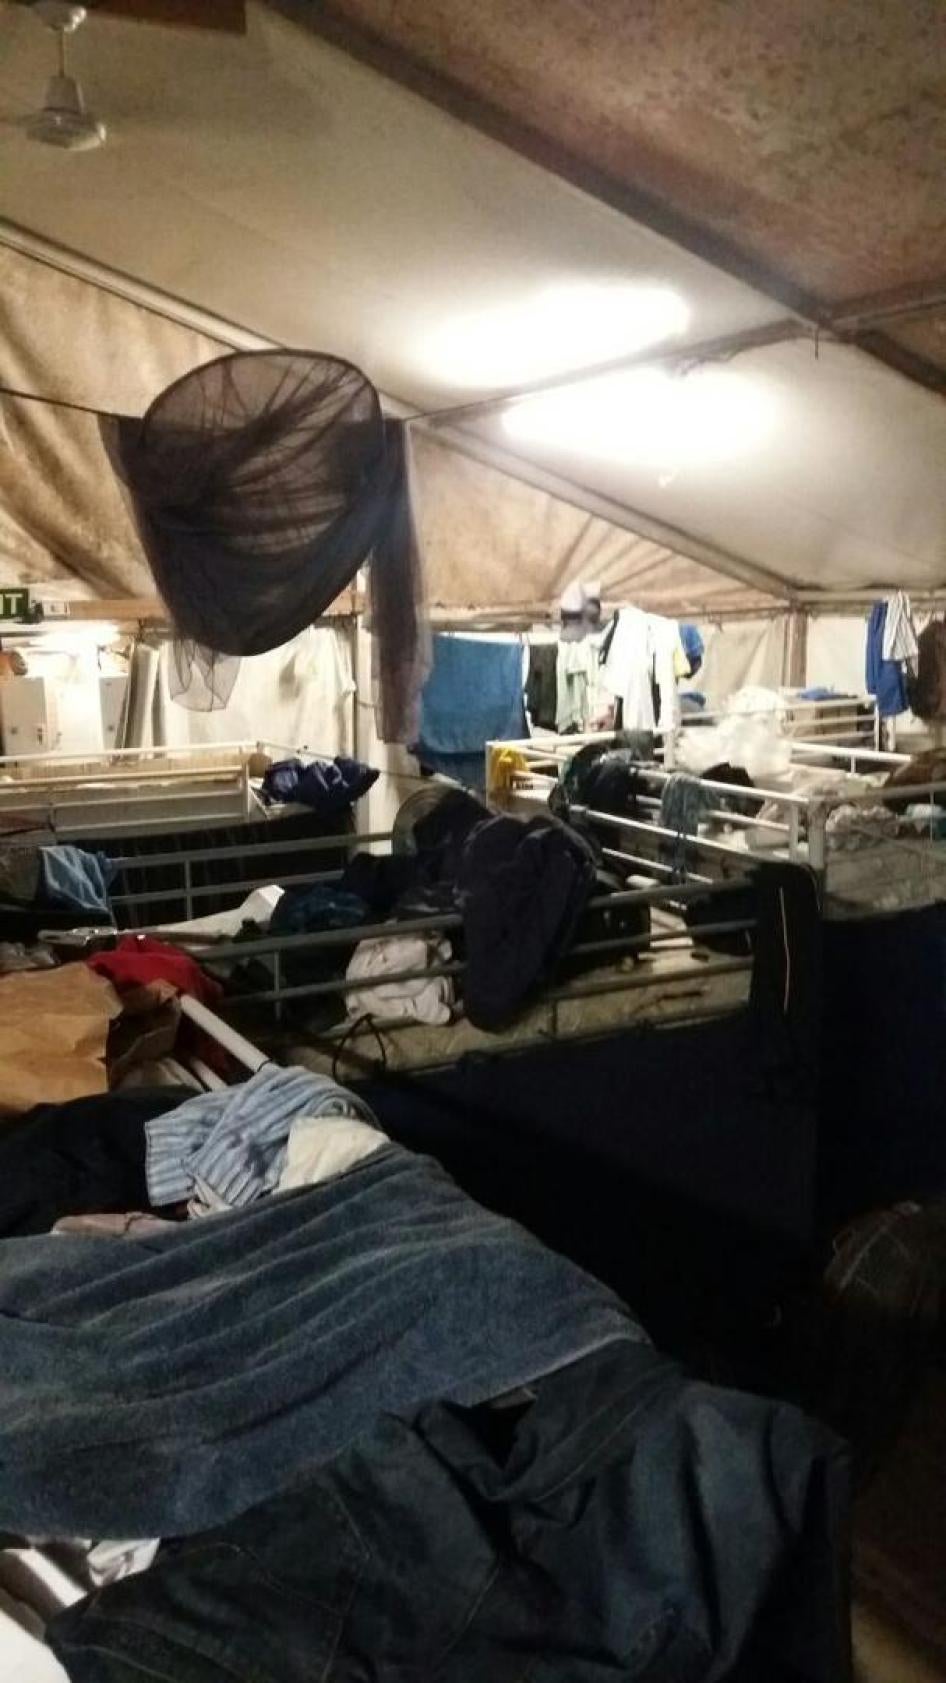 Plus de 400 demandeurs d’asile et réfugiés vivent toujours entassés dans des tentes au « Centre régional de traitement » d’Australie, à Nauru. Les températures dans les tentes atteignent régulièrement 45 à 50 degrés Celsius.